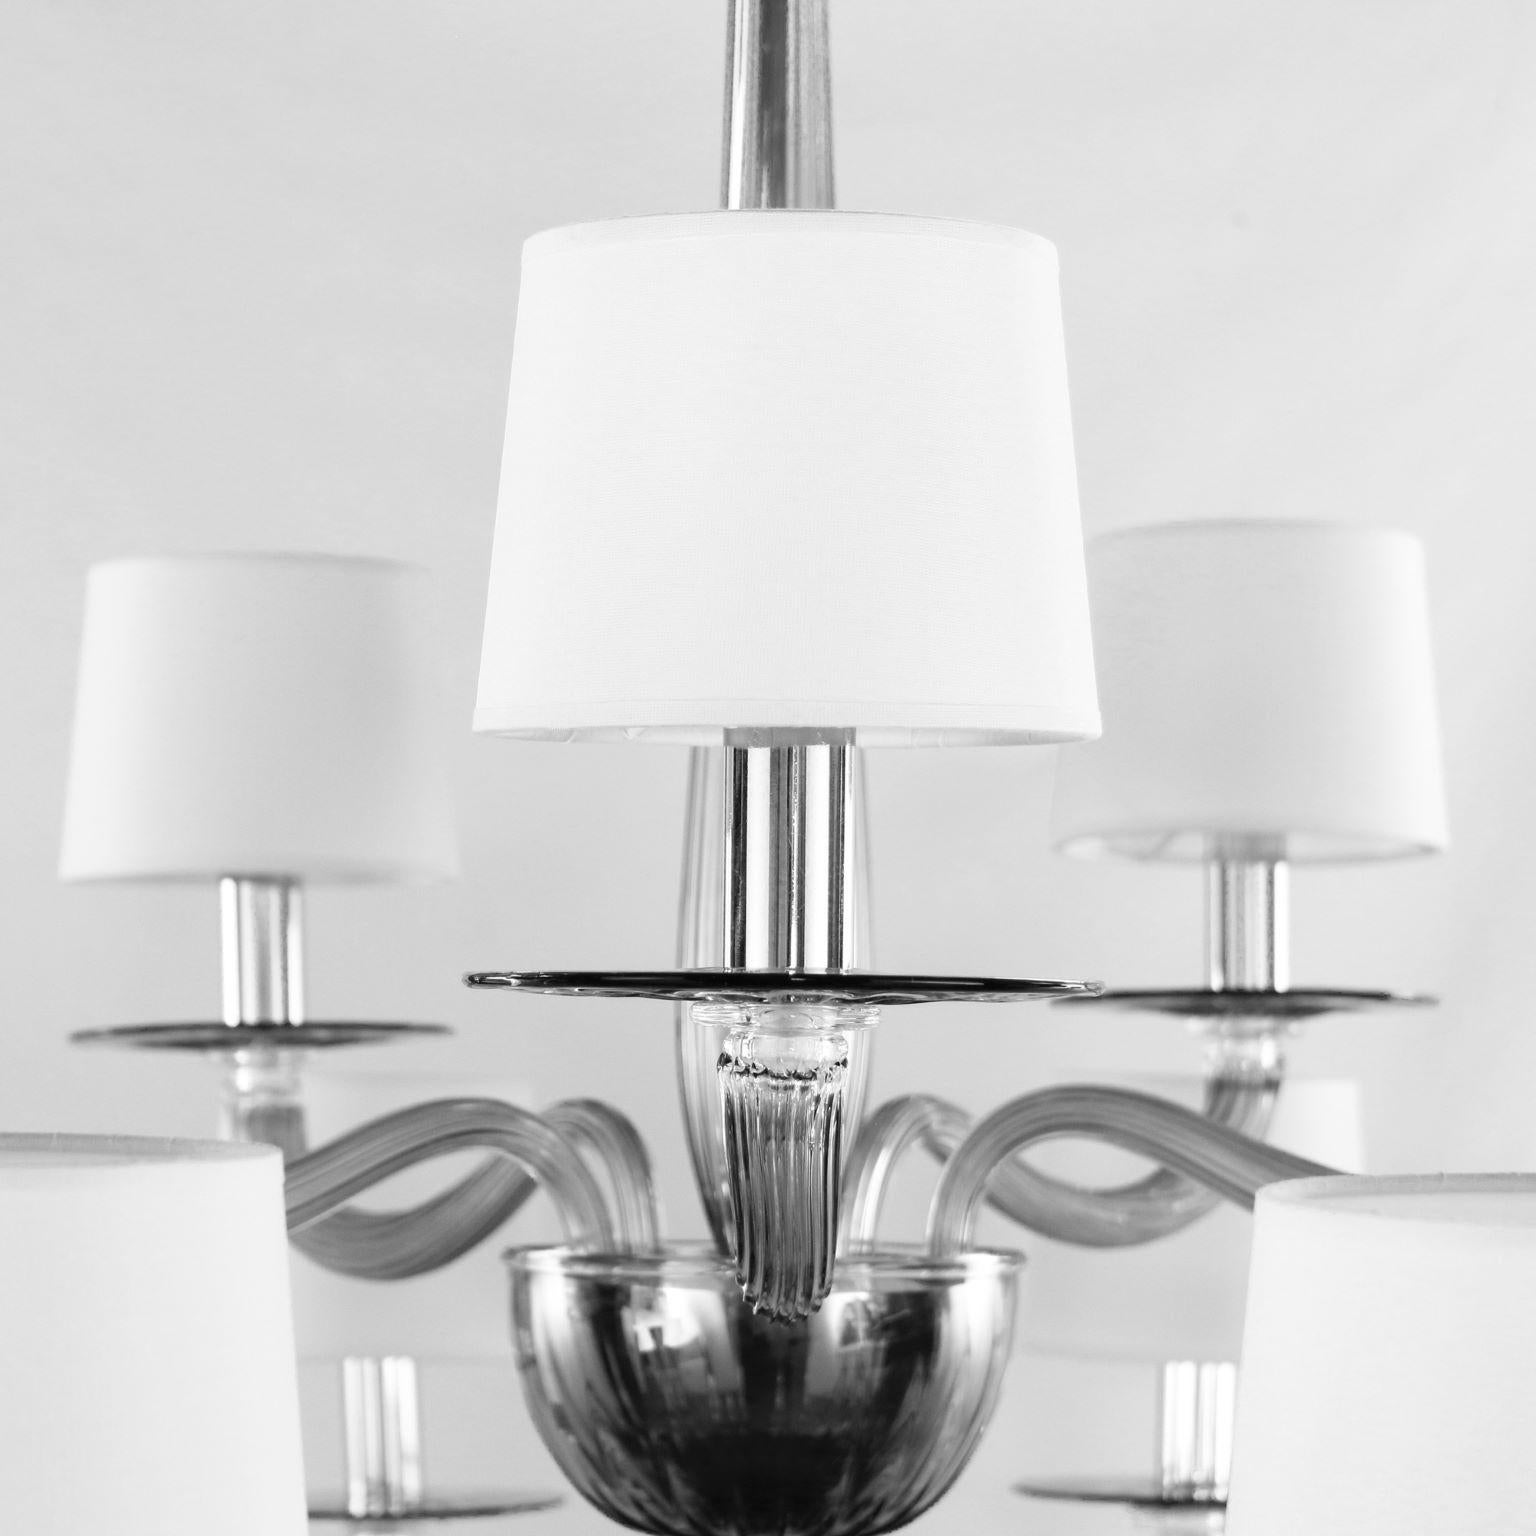 Serenade Kronleuchter mit 10+5 Lichtern aus grauem Muranoglas und weißen, handgefertigten Baumwolllampenschirmen von Multiforme.
Die Kollektion Serenade ist von einem zeitgenössischen und internationalen Design inspiriert, das einfach, aber nicht